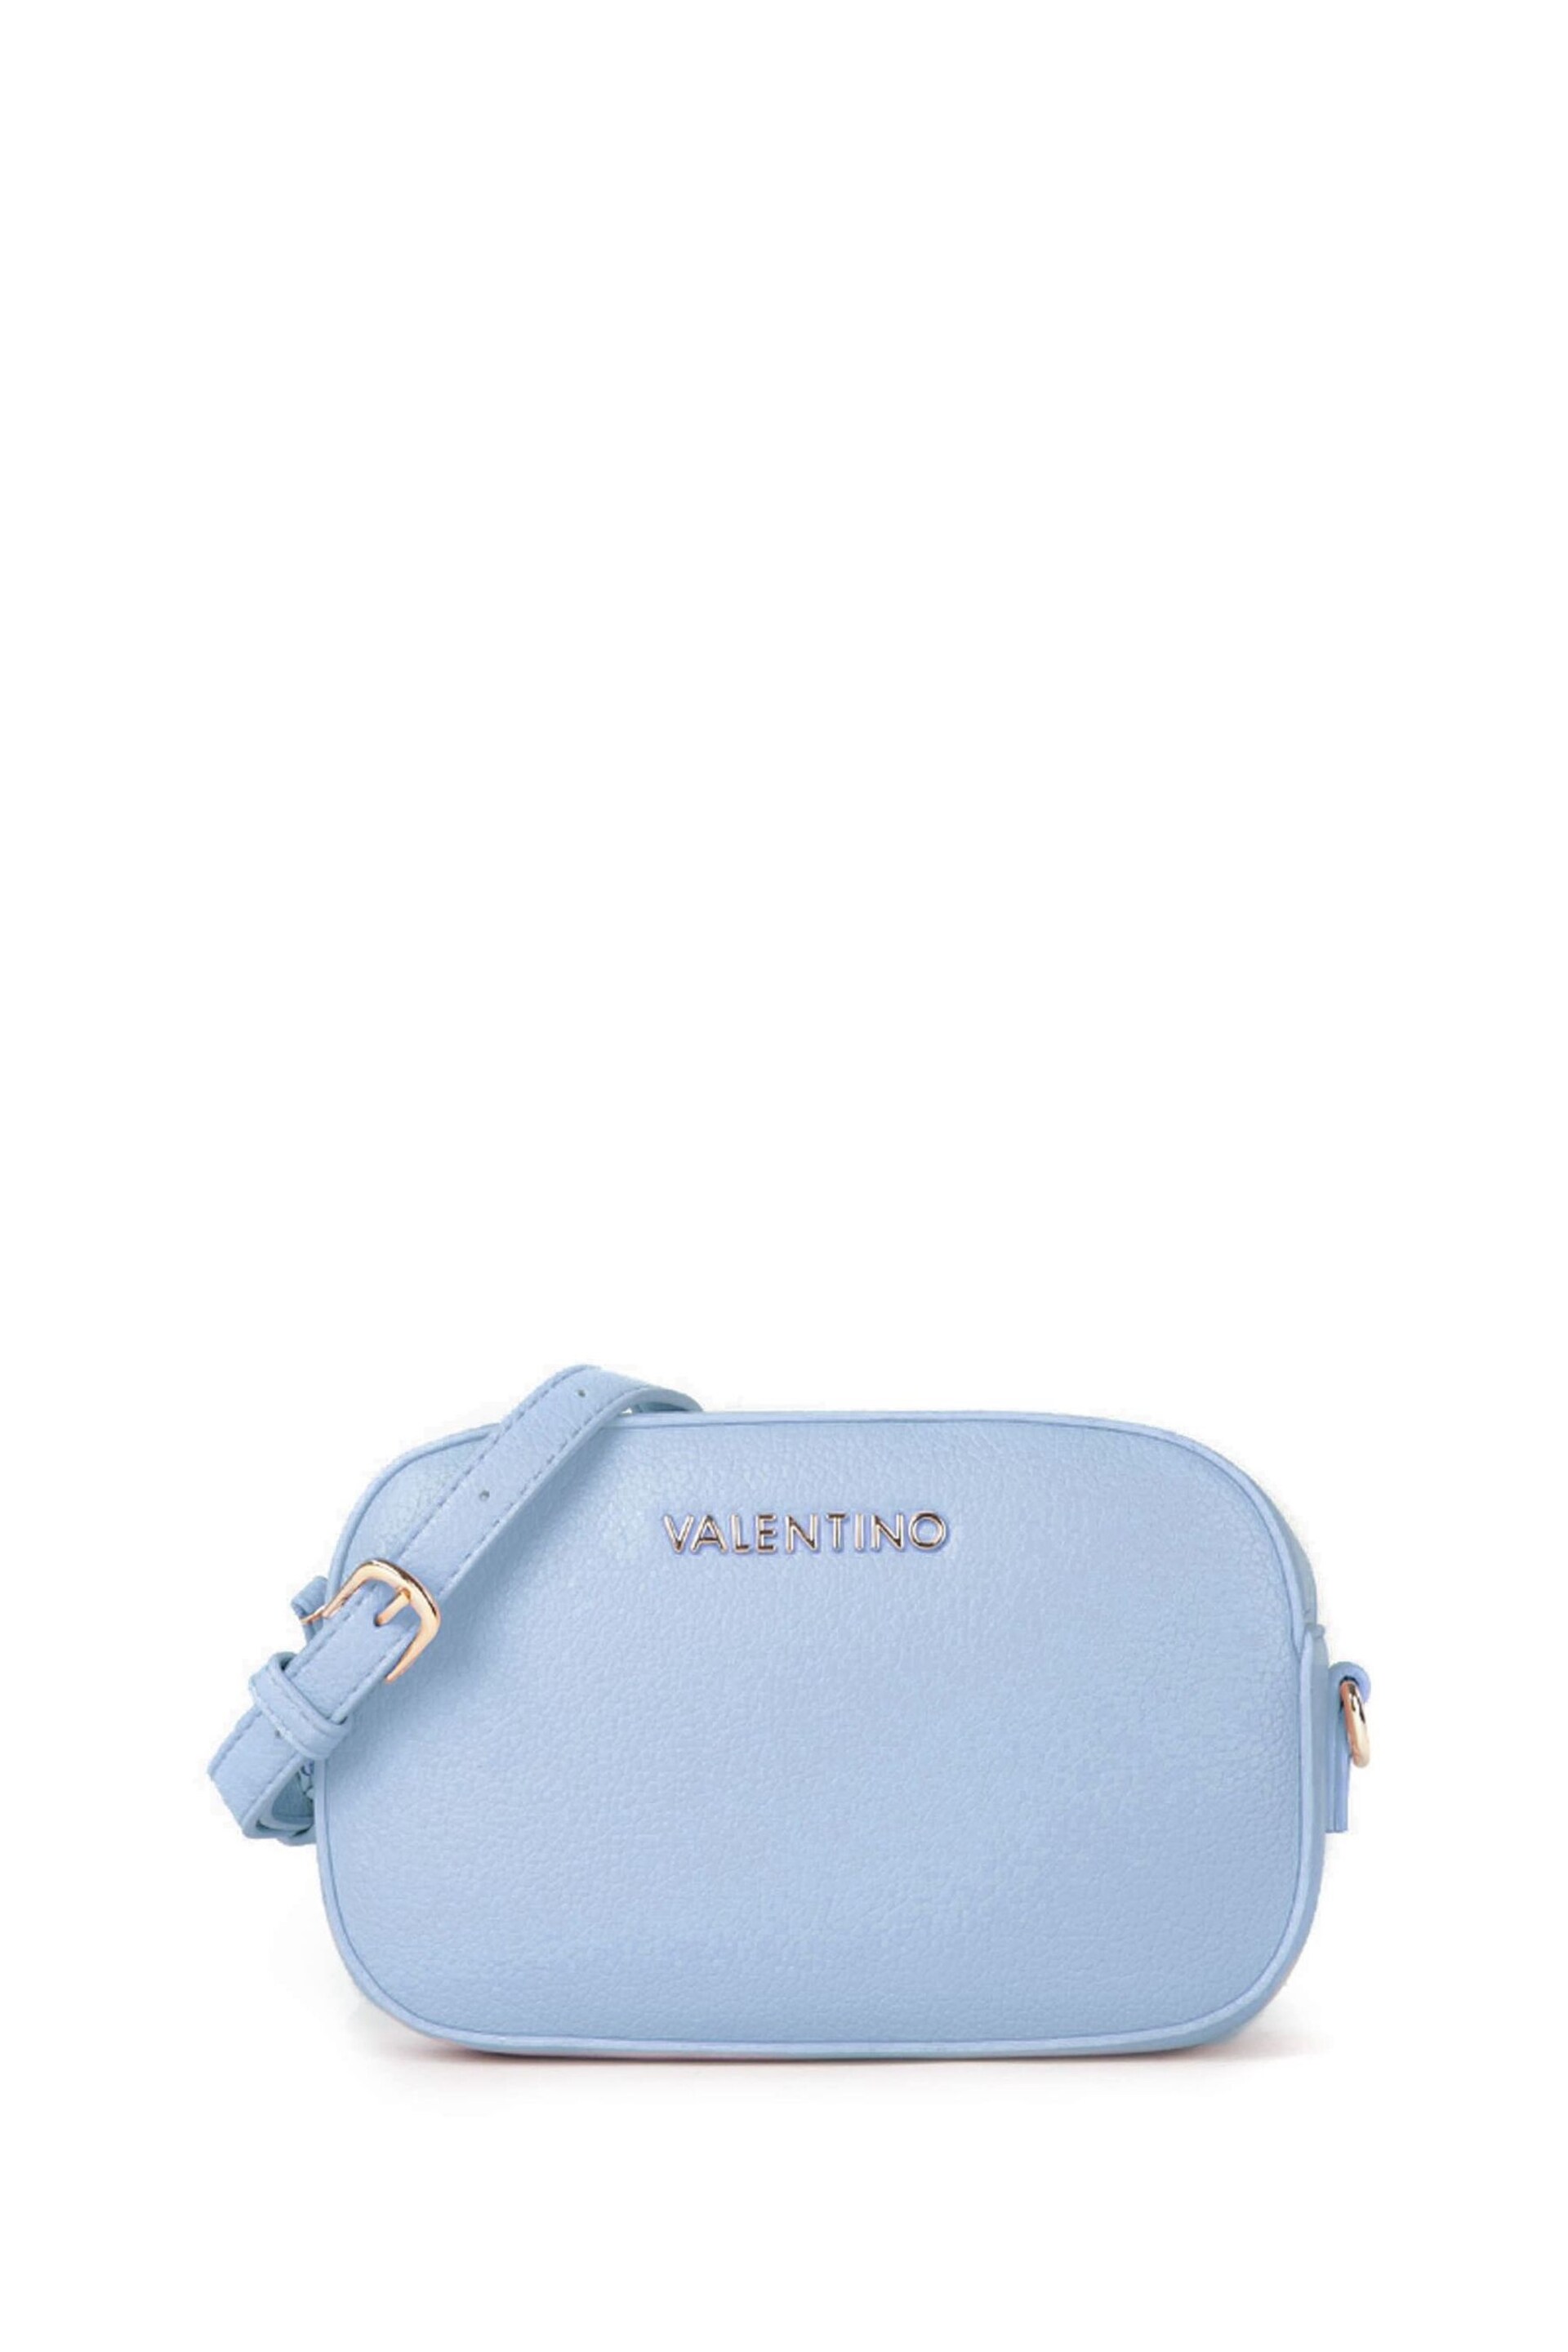 Valentino Bags Blue Special Martu Camera Bag - Image 2 of 5